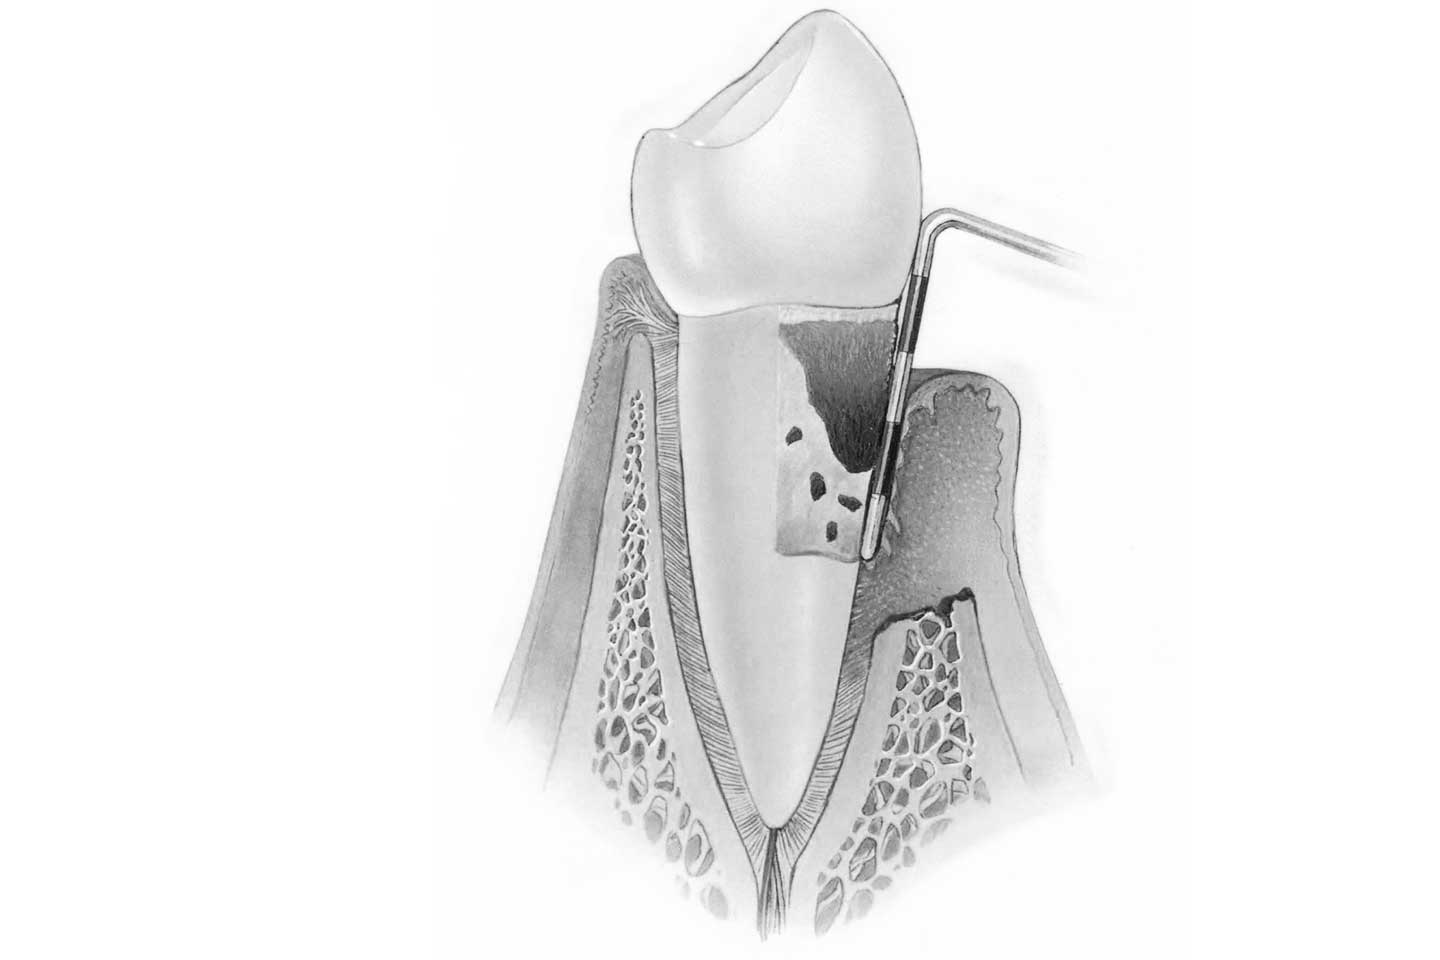 Ortodoncia con periodontitis